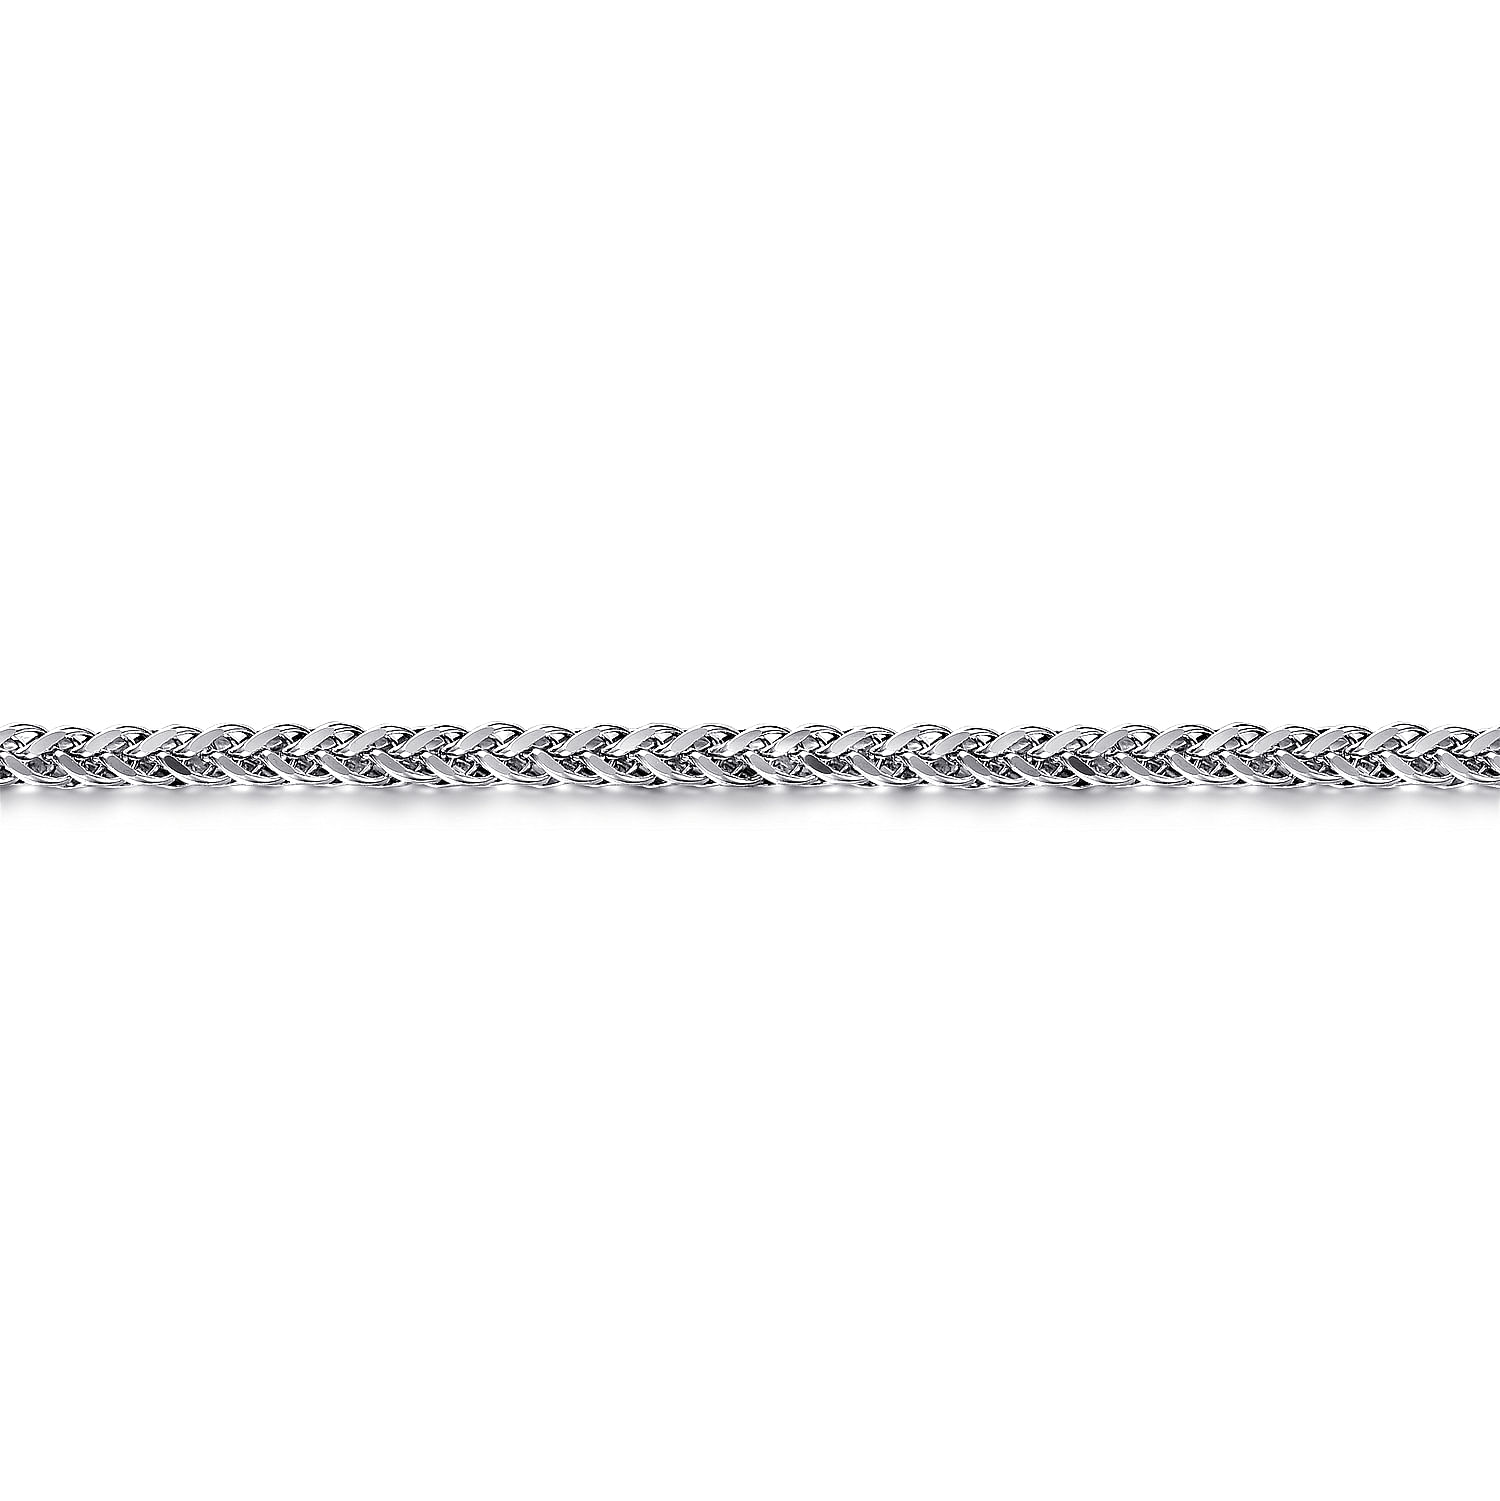 925 Sterling Silver Men's Wheat Chain Bracelet 